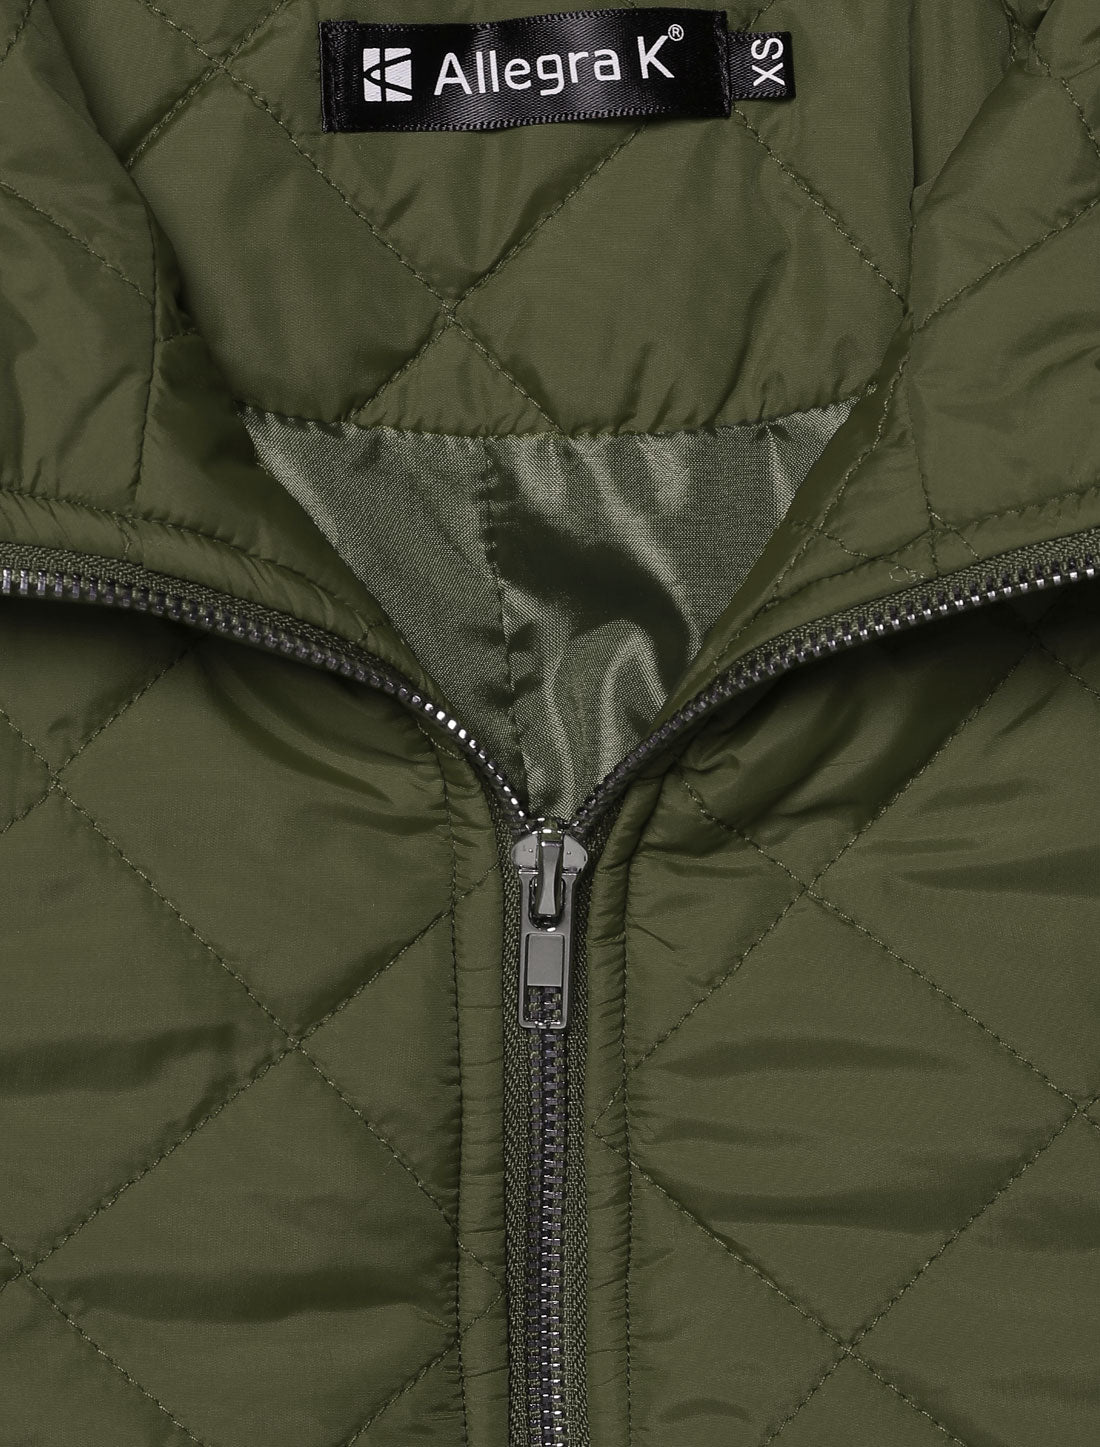 Allegra K Stand Collar Zip Lightweight Quilted Jacket